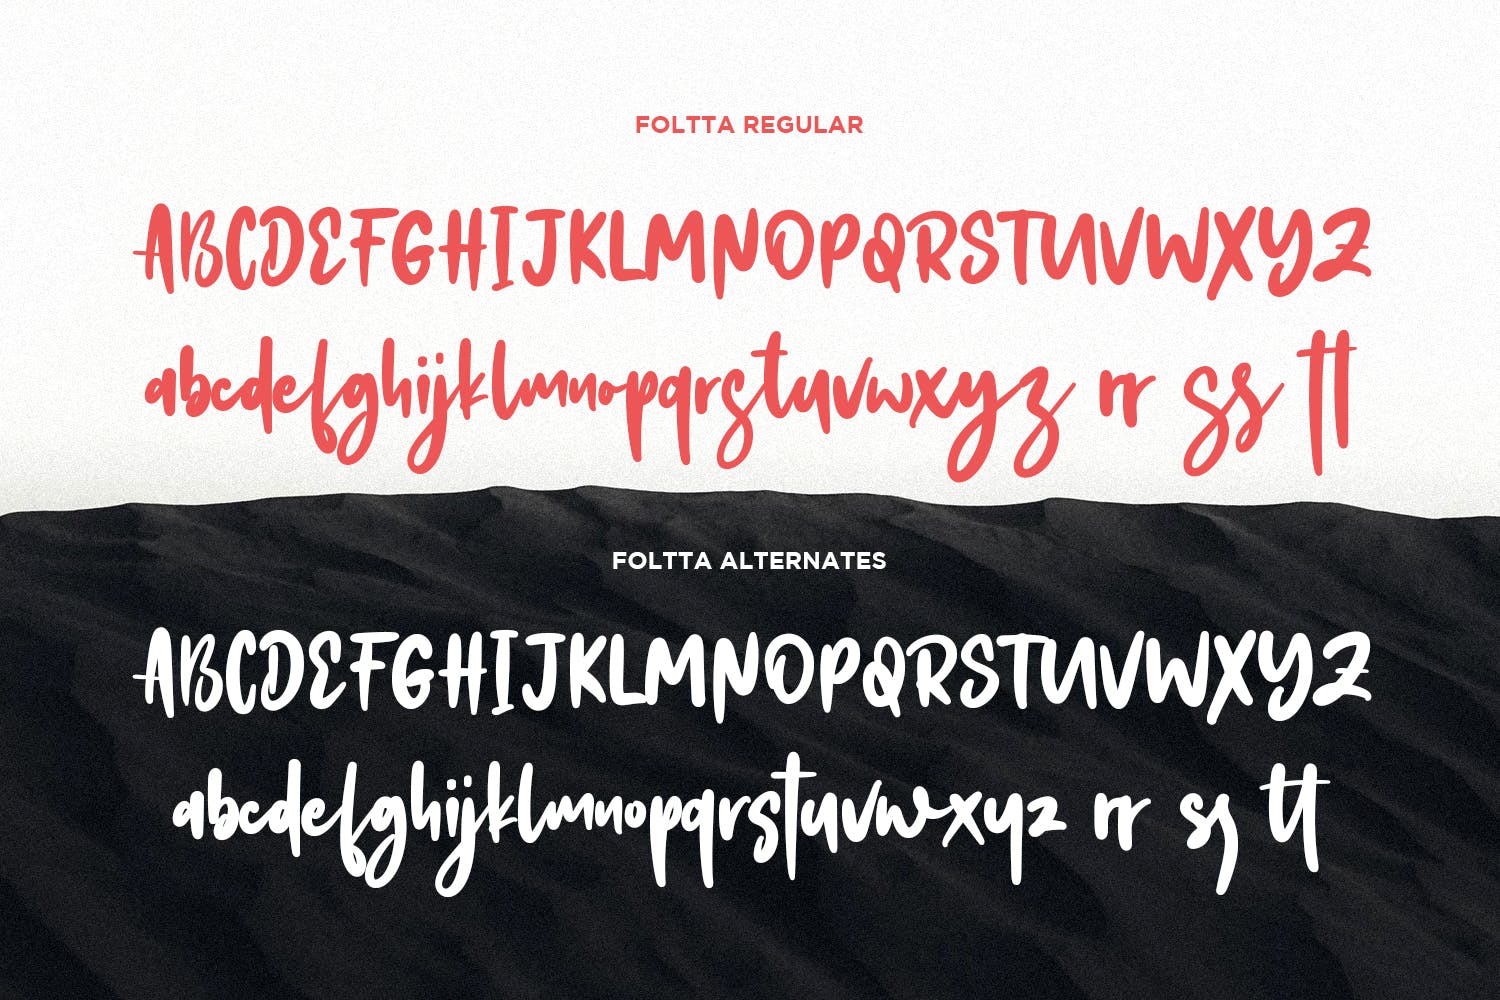 创意手工制作英文书法字体下载 Foltta Typeface插图9